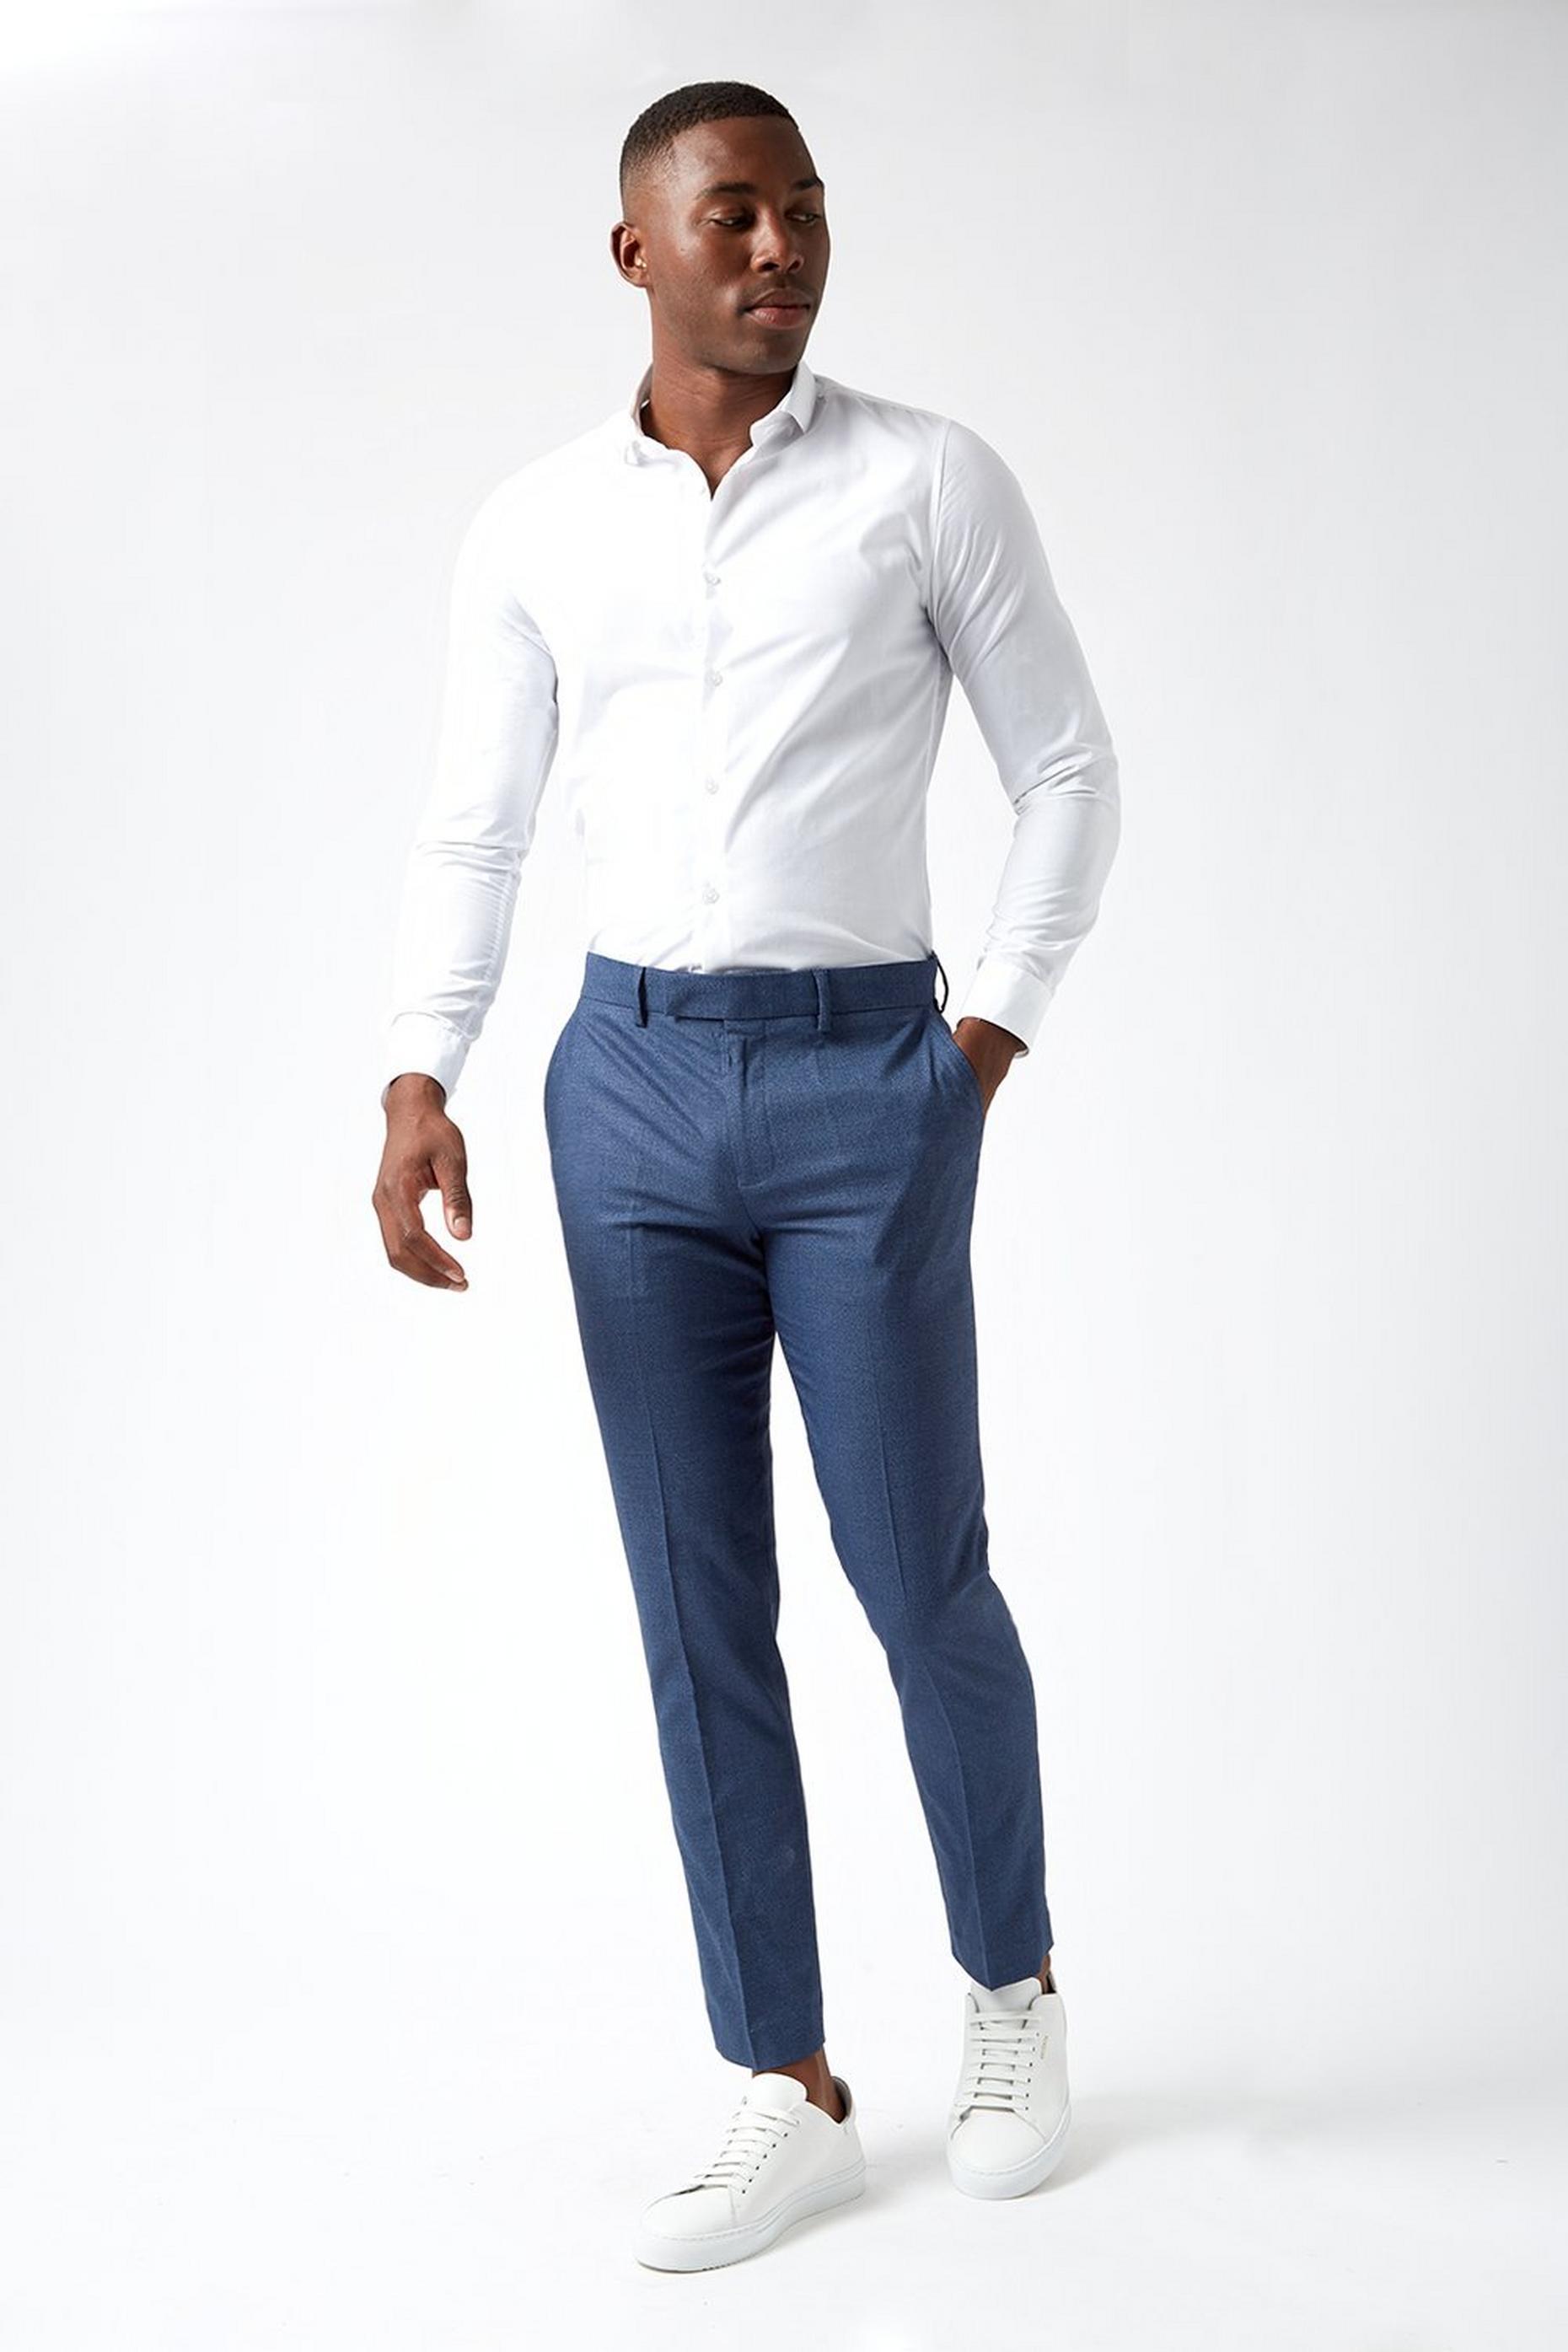 Men's Suit Trousers | Black Suit Trousers for Men | Burton